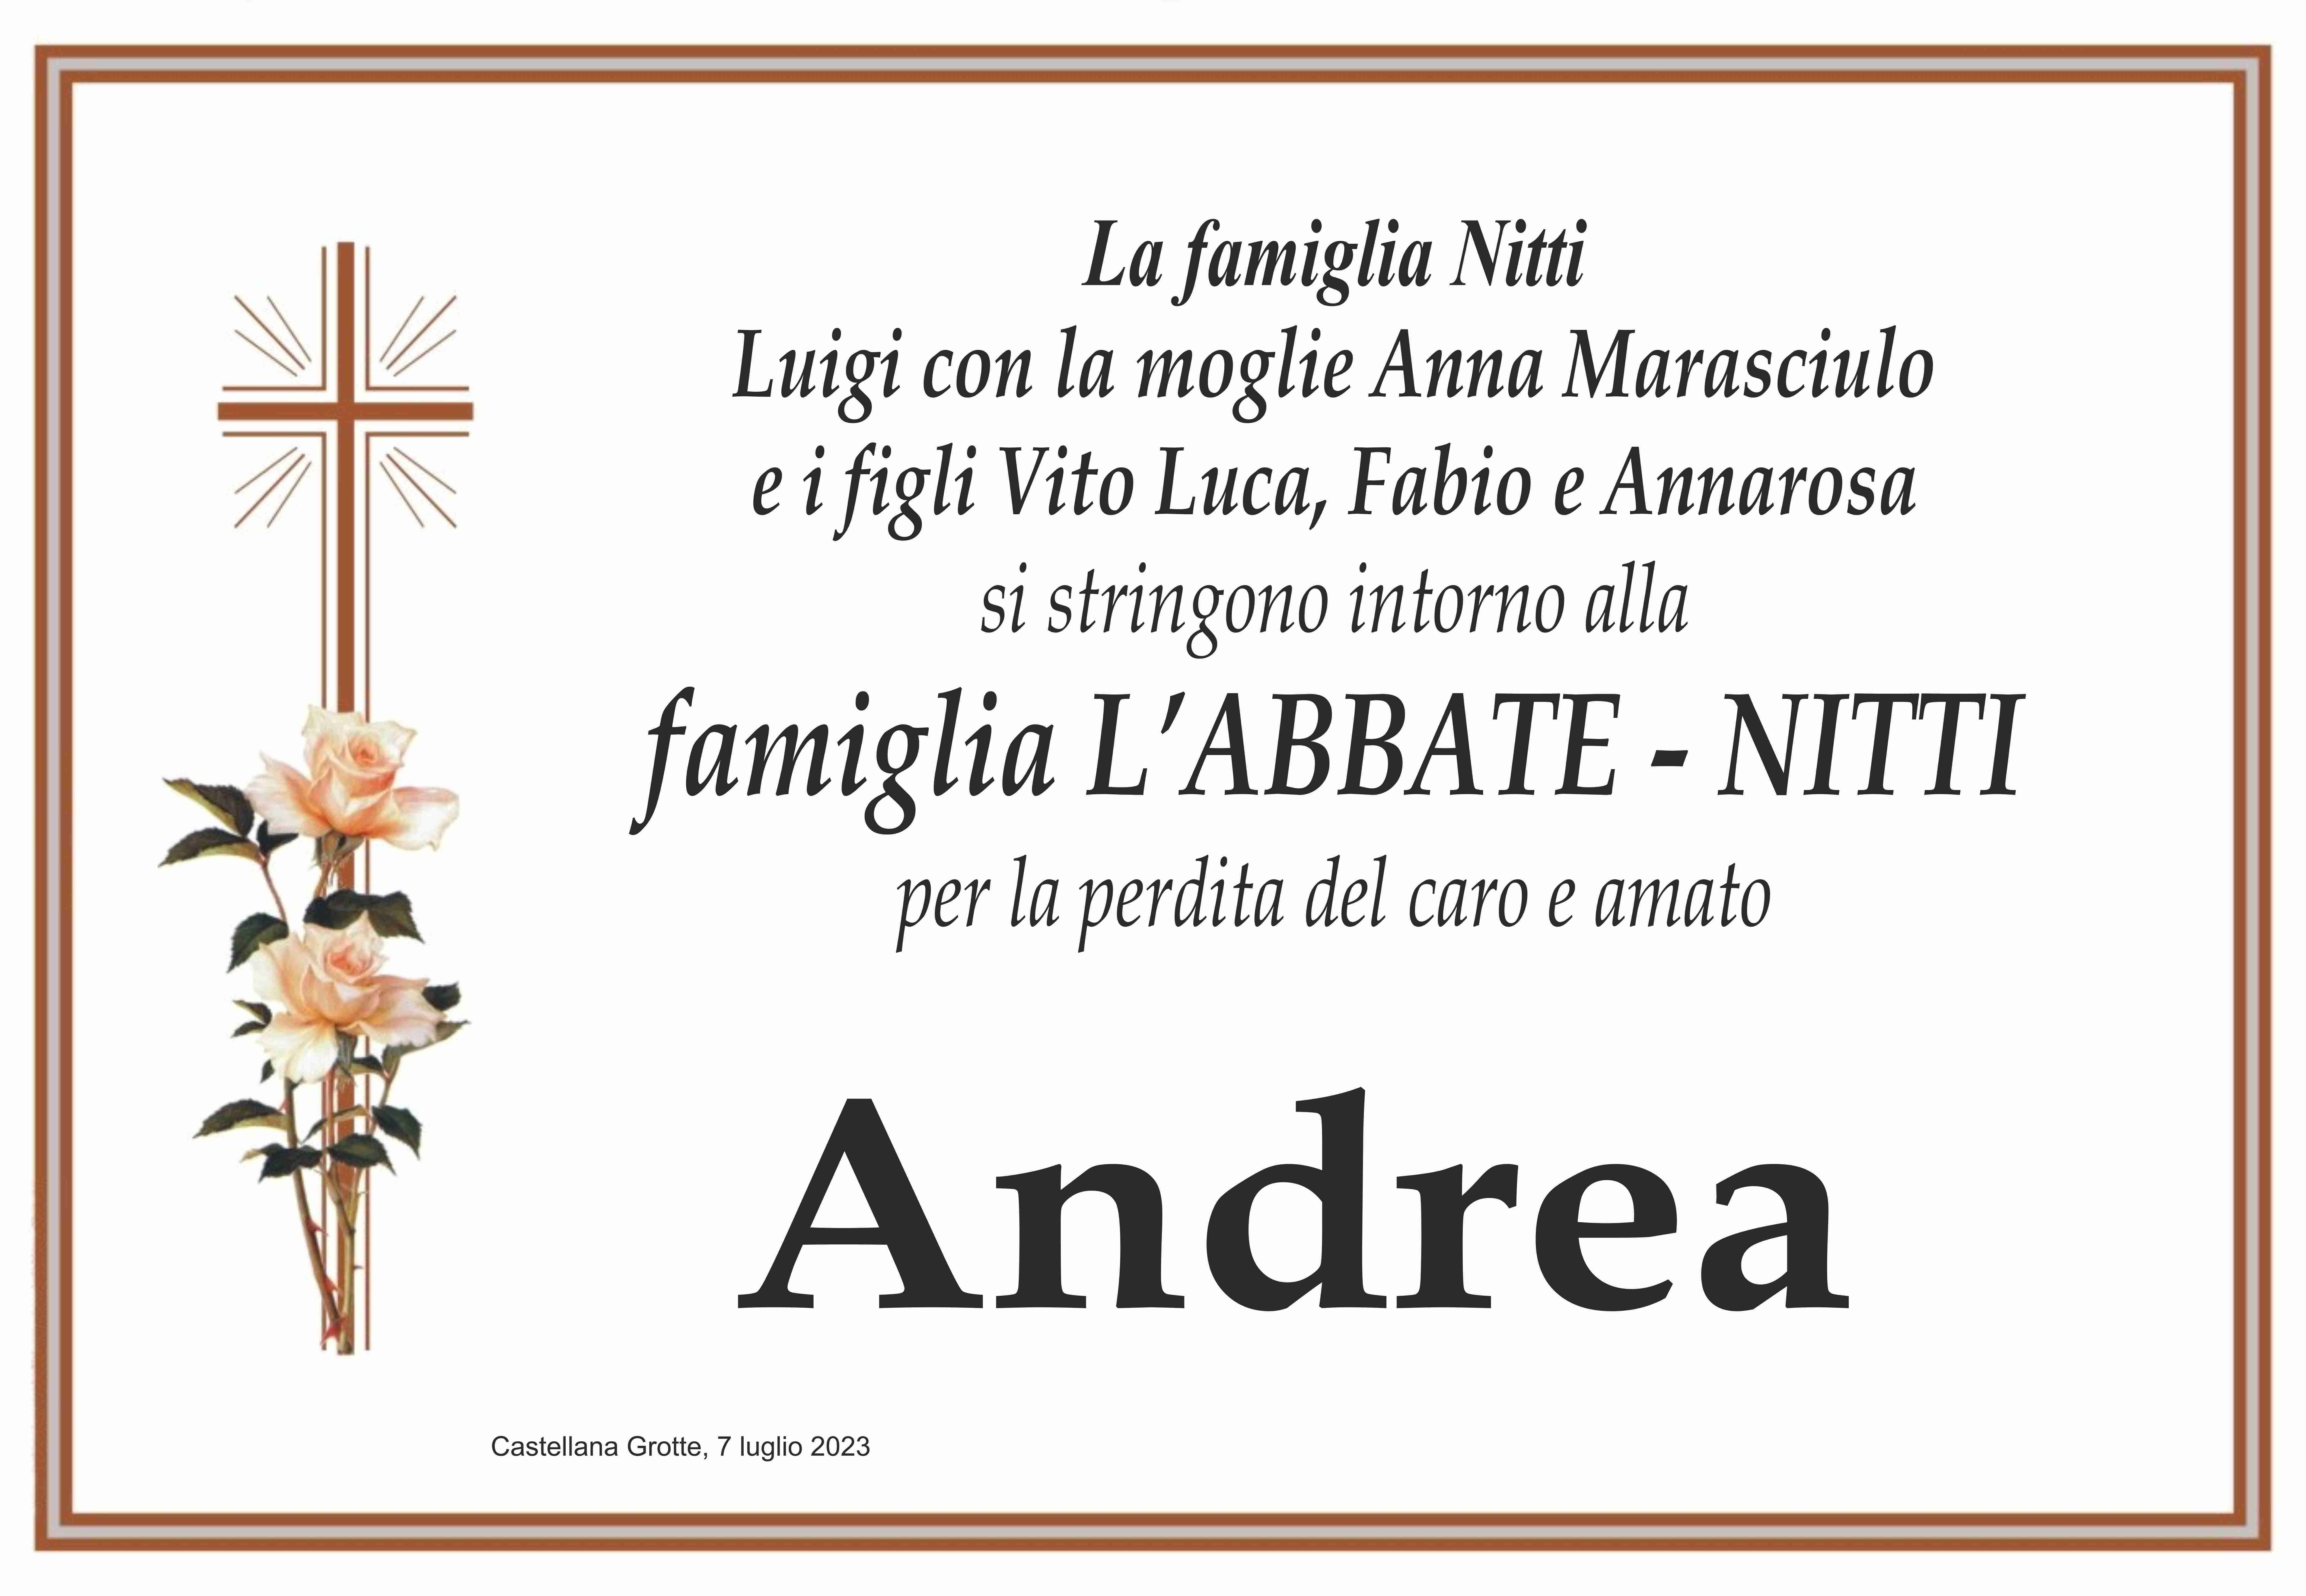 Andrea L'Abbate